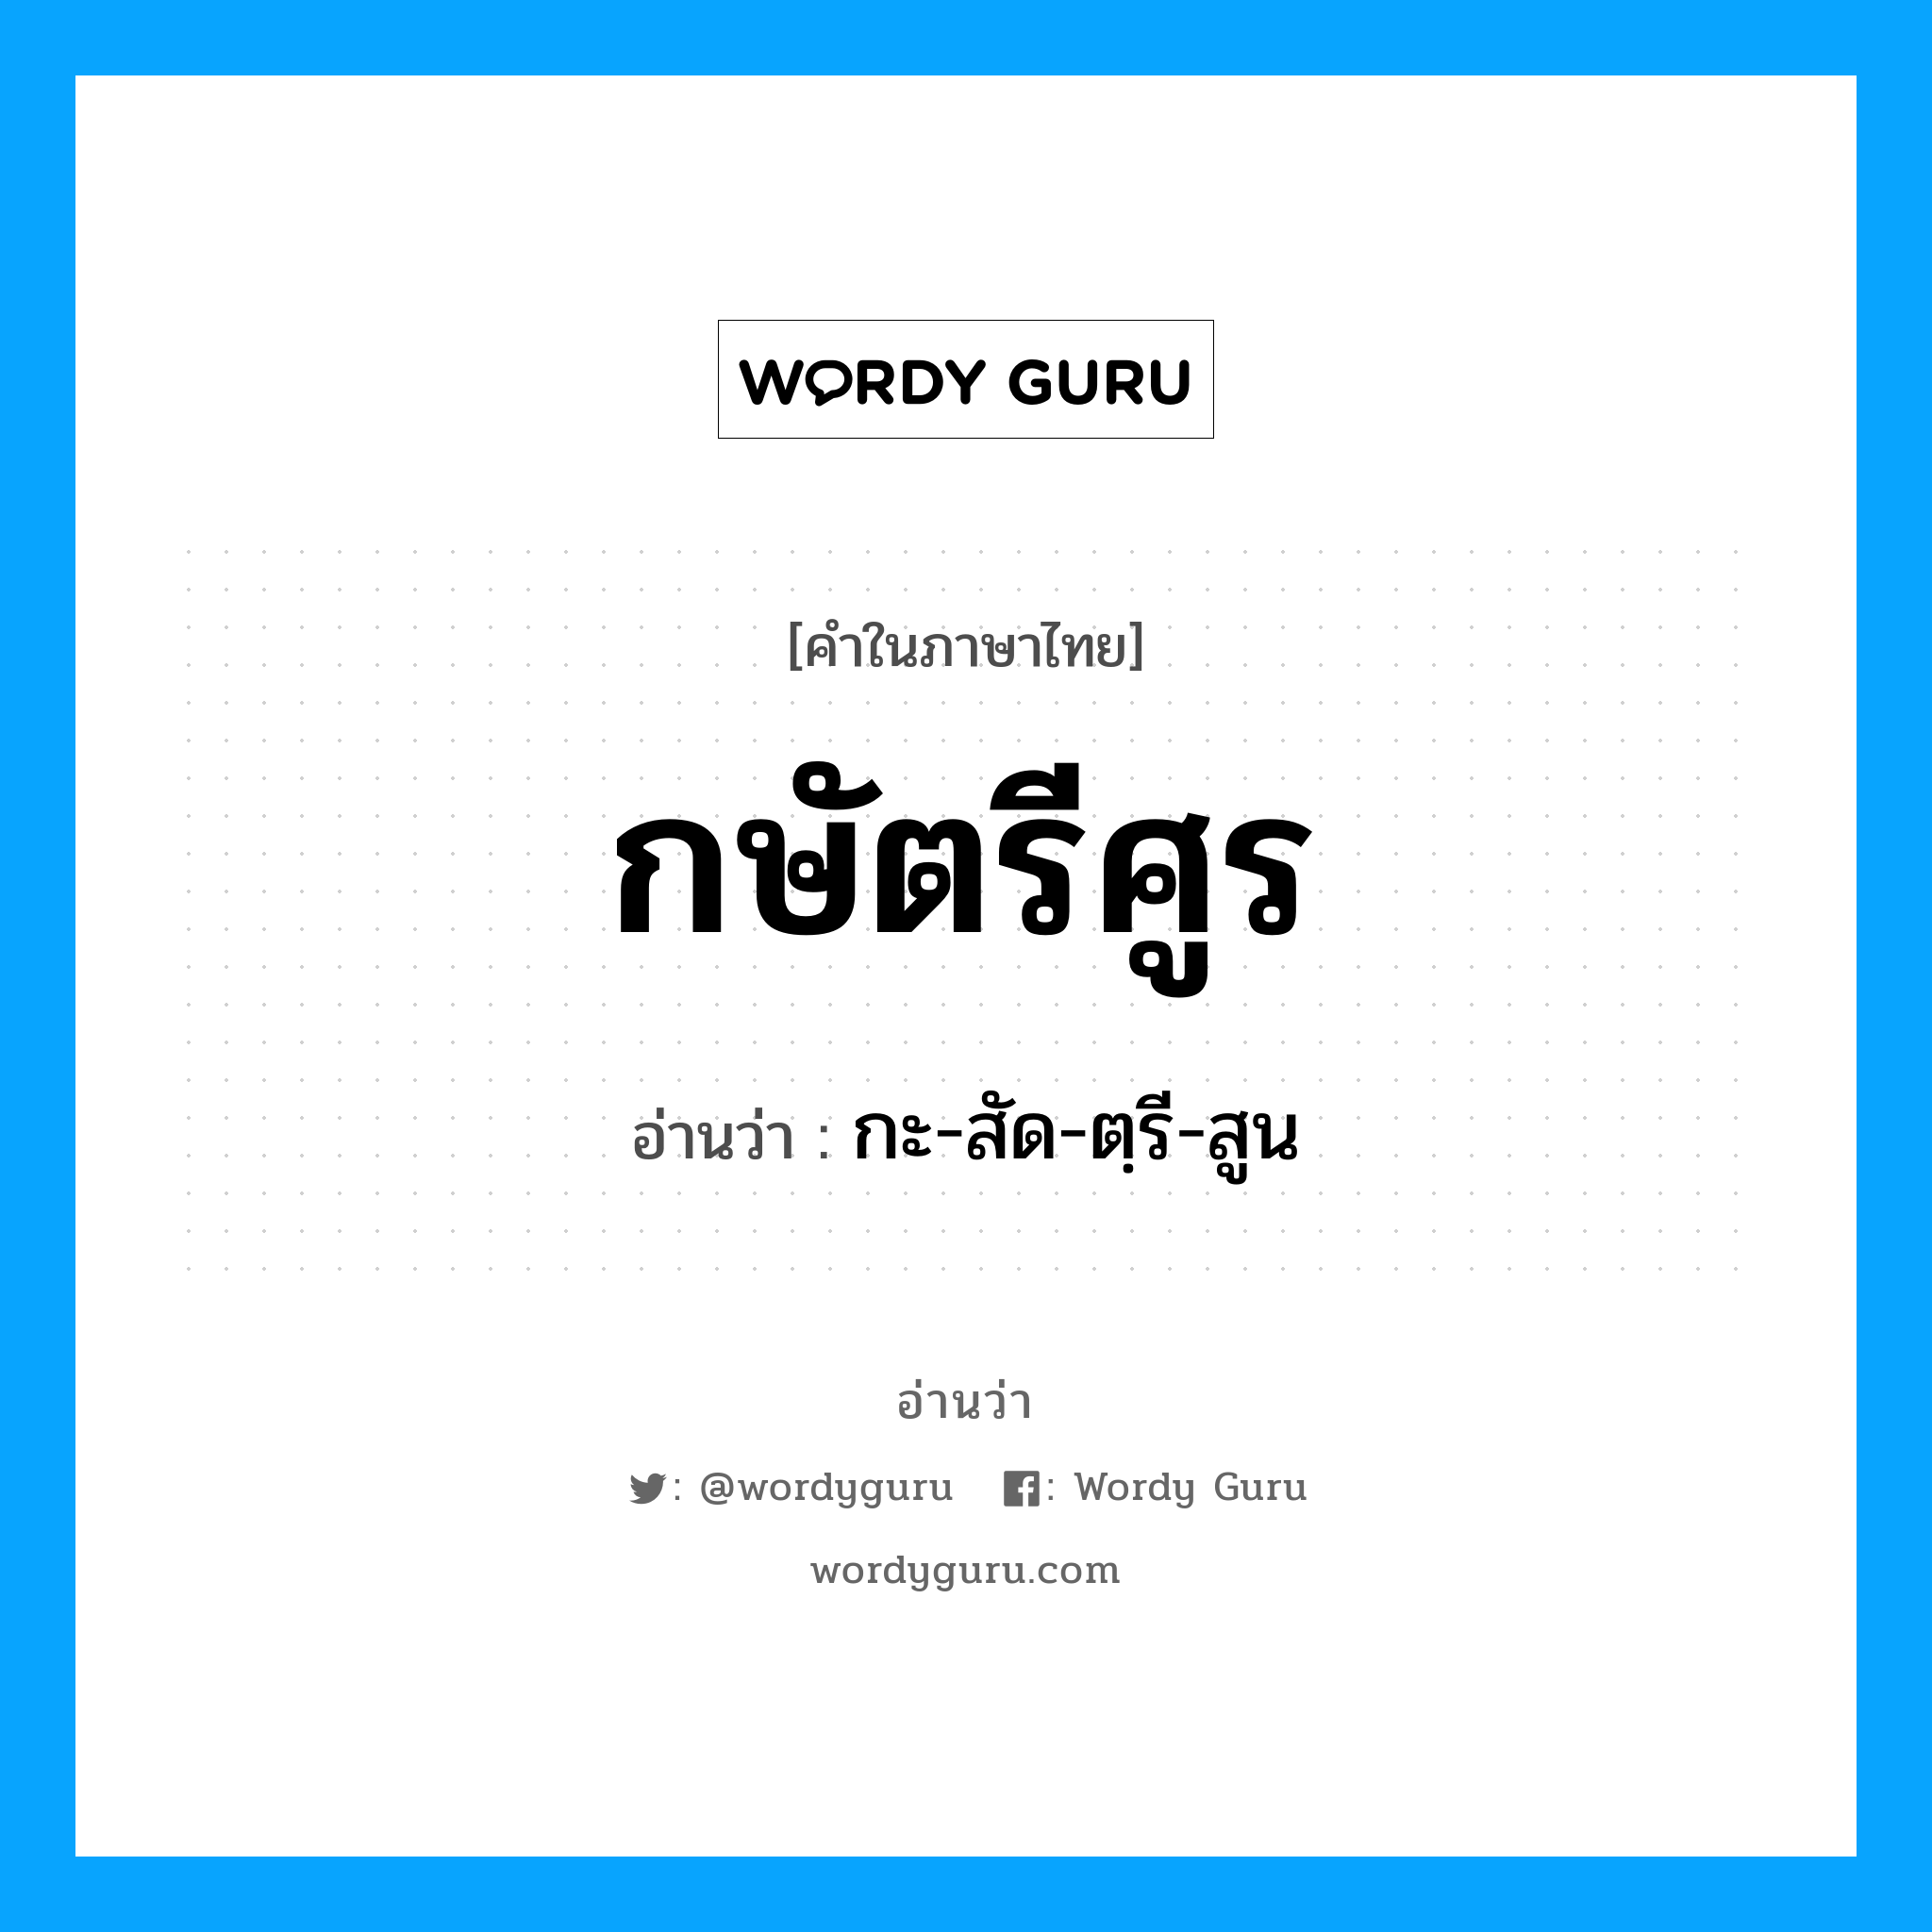 กะ-สัด-ตฺรี-สูน เป็นคำอ่านของคำไหน?, คำในภาษาไทย กะ-สัด-ตฺรี-สูน อ่านว่า กษัตรีศูร